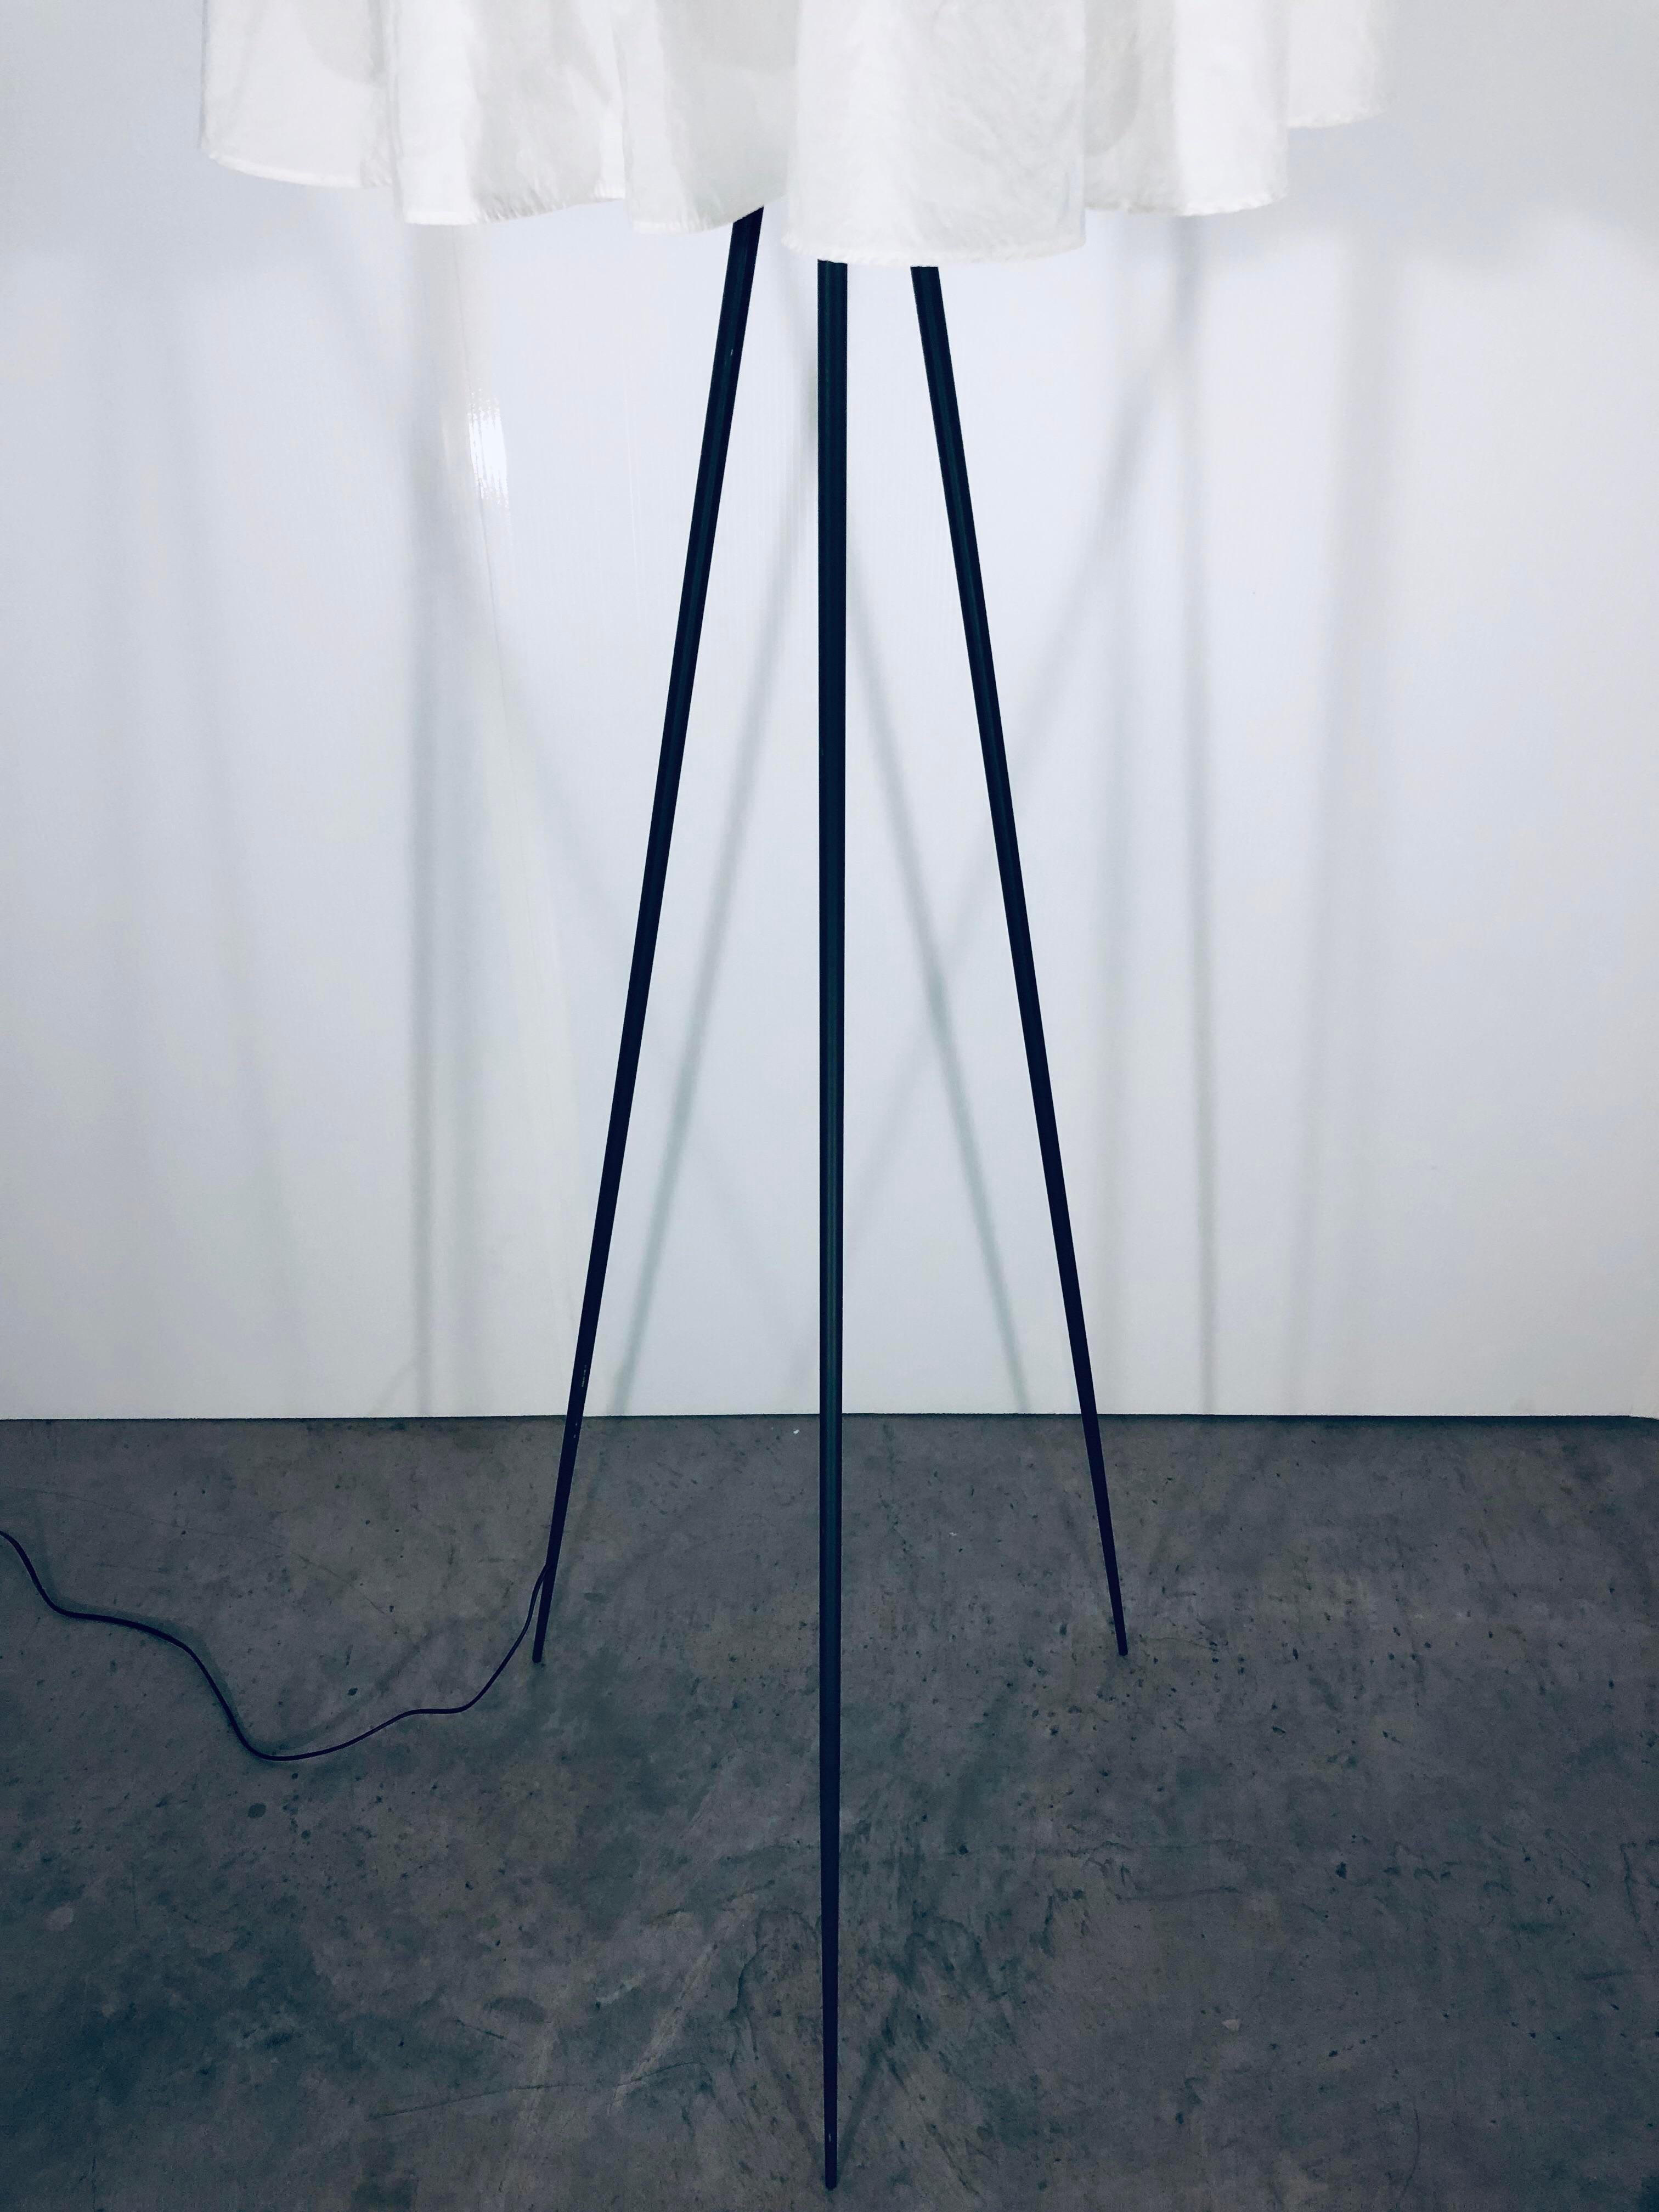 Italian Flos “Rosy Angelis” Floor Lamp by Philippe Starck